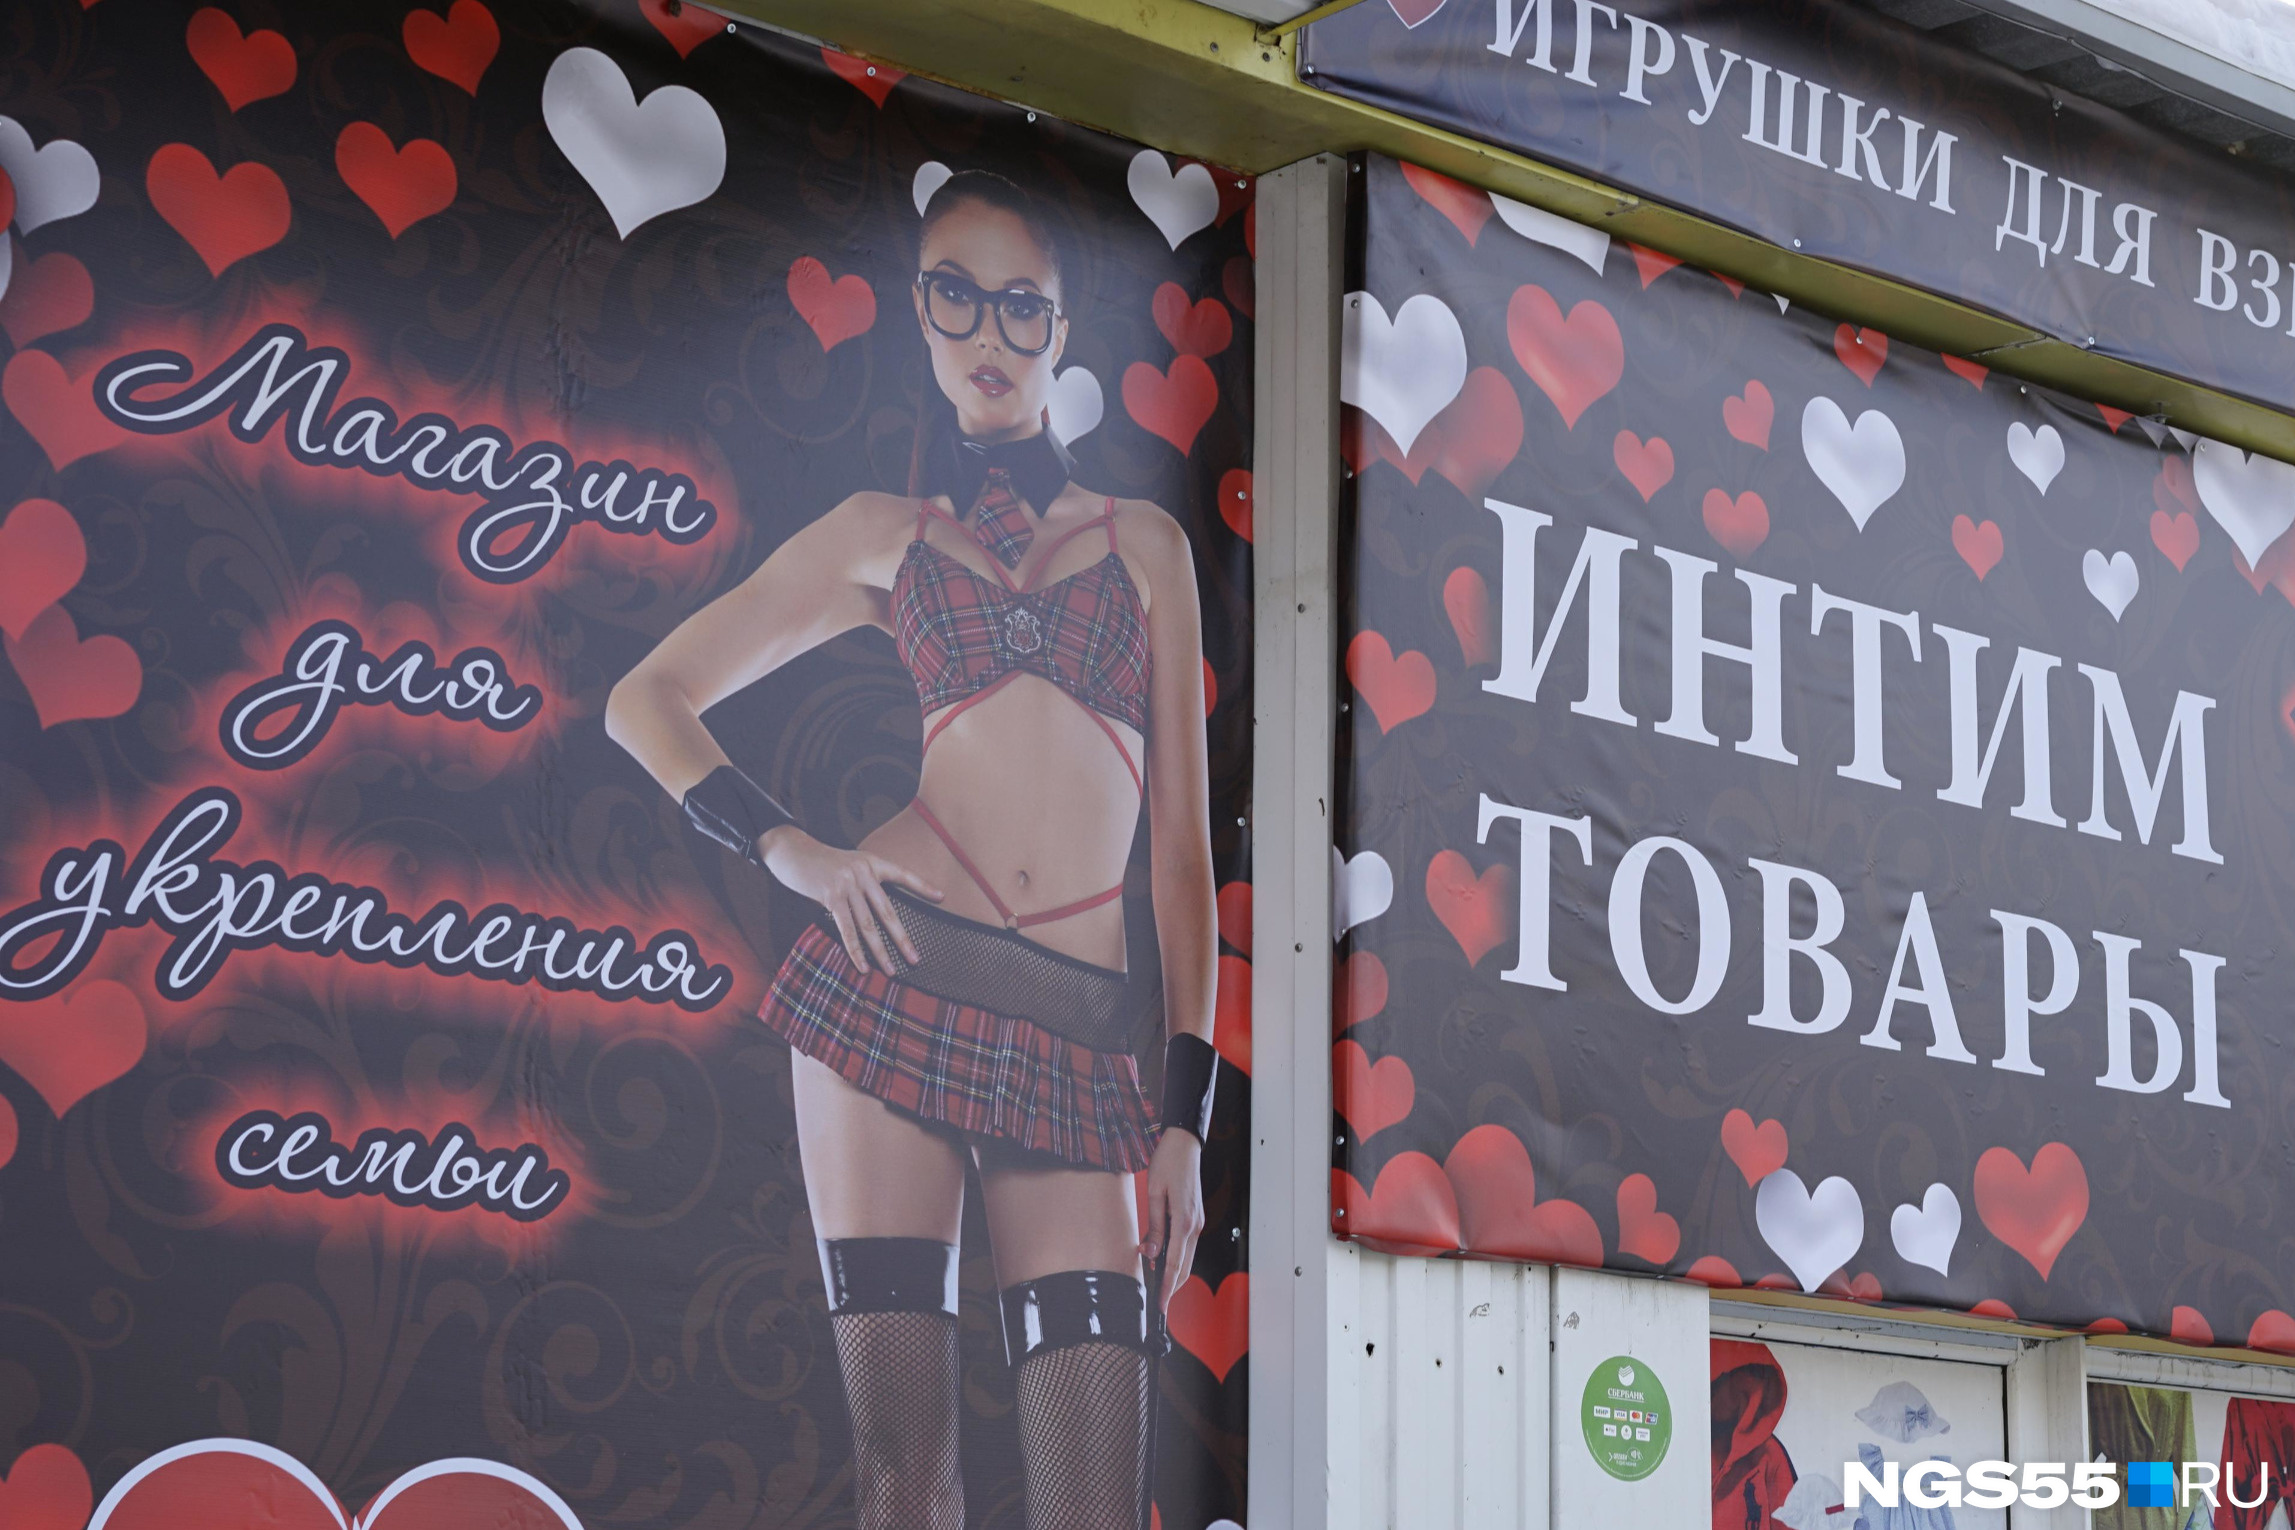 Интим-магазины в Нижнем Новгороде